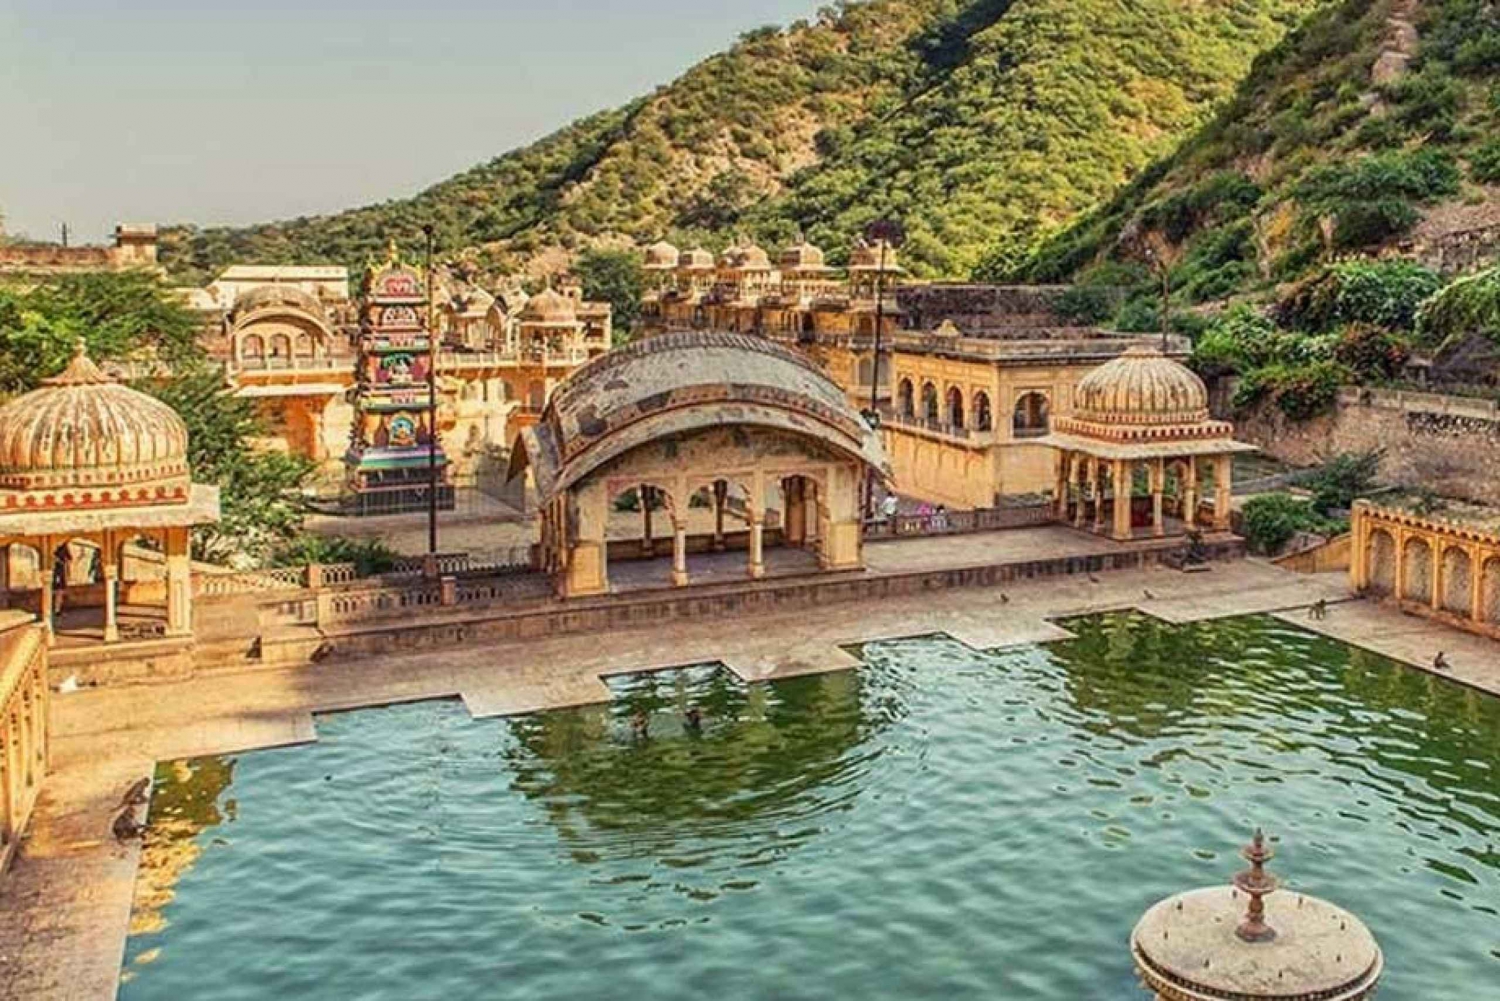 Jaipur: Hel dags privat sightseeingtur